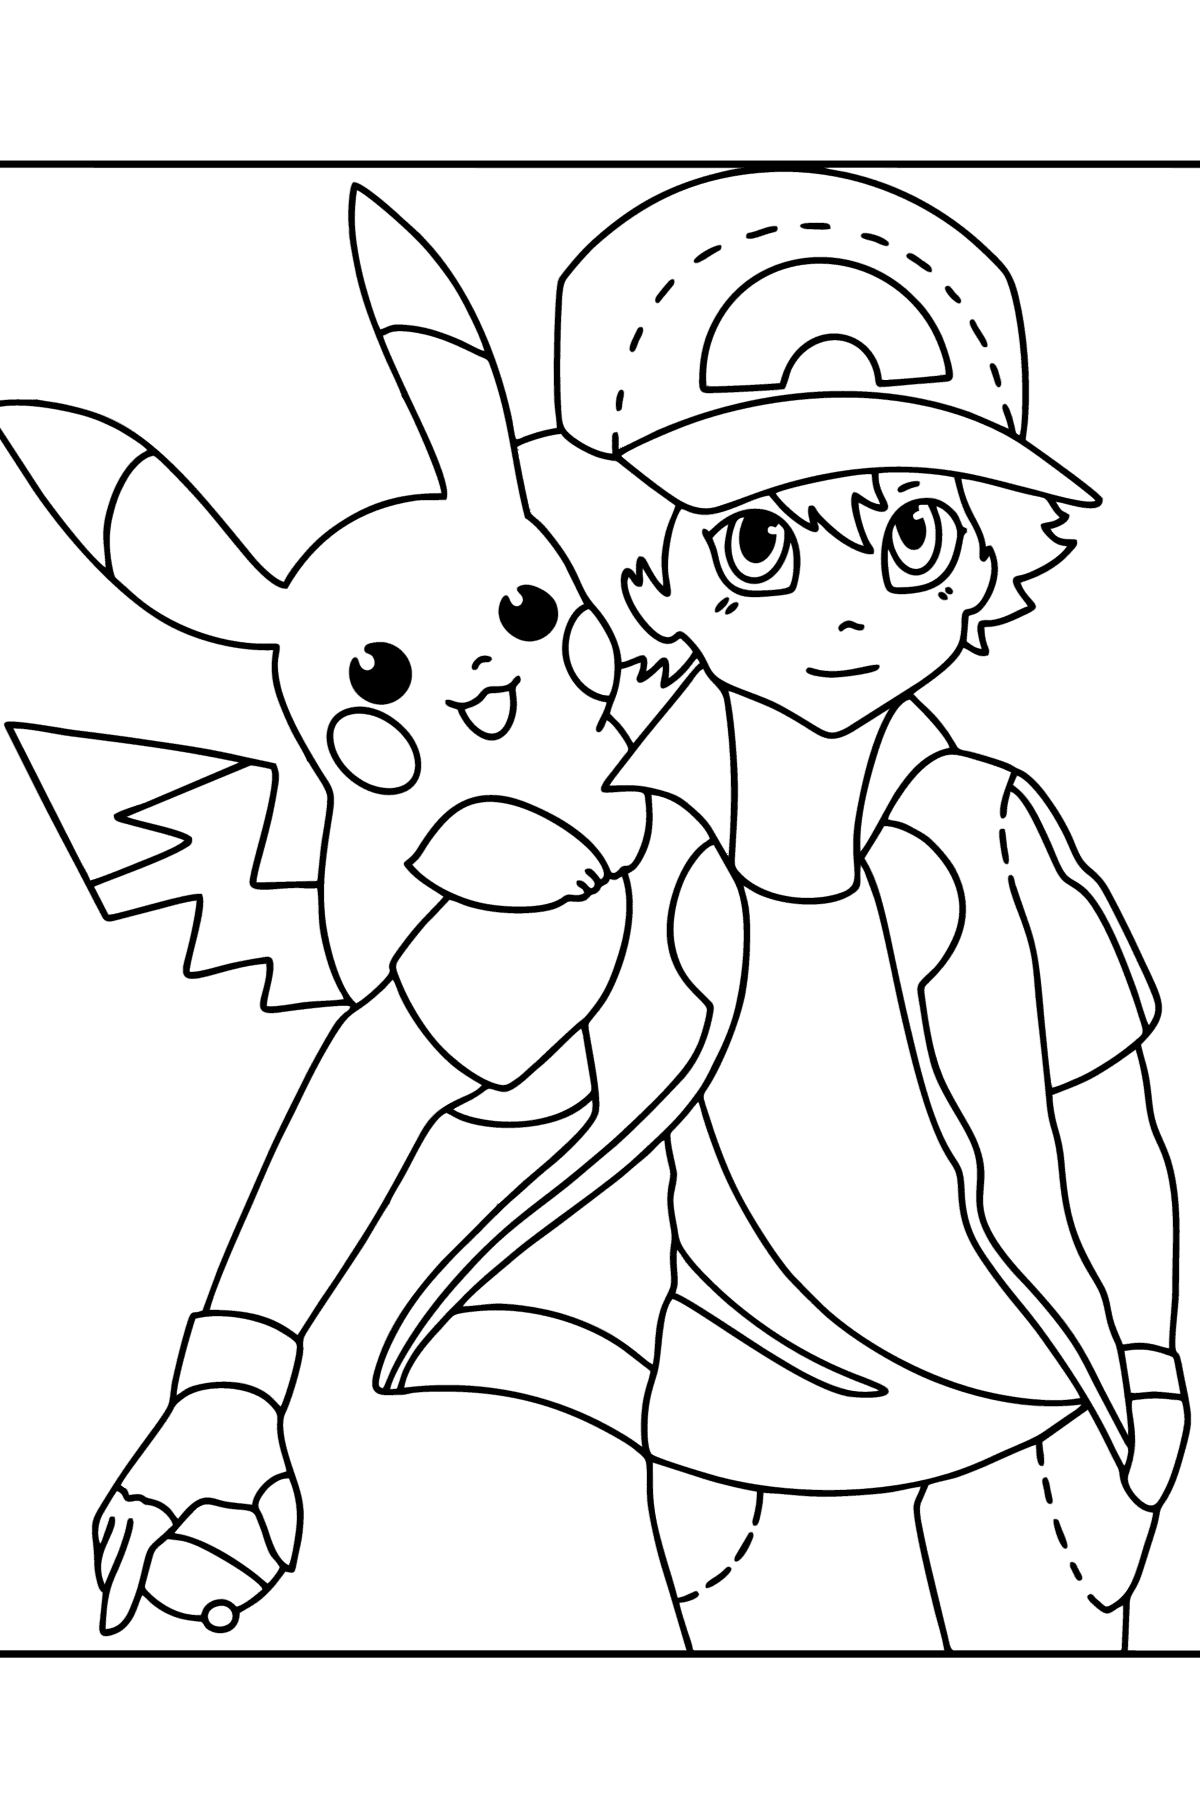 Tegning til fargelegging Pokémon XY Ash Ketchum - Tegninger til fargelegging for barn